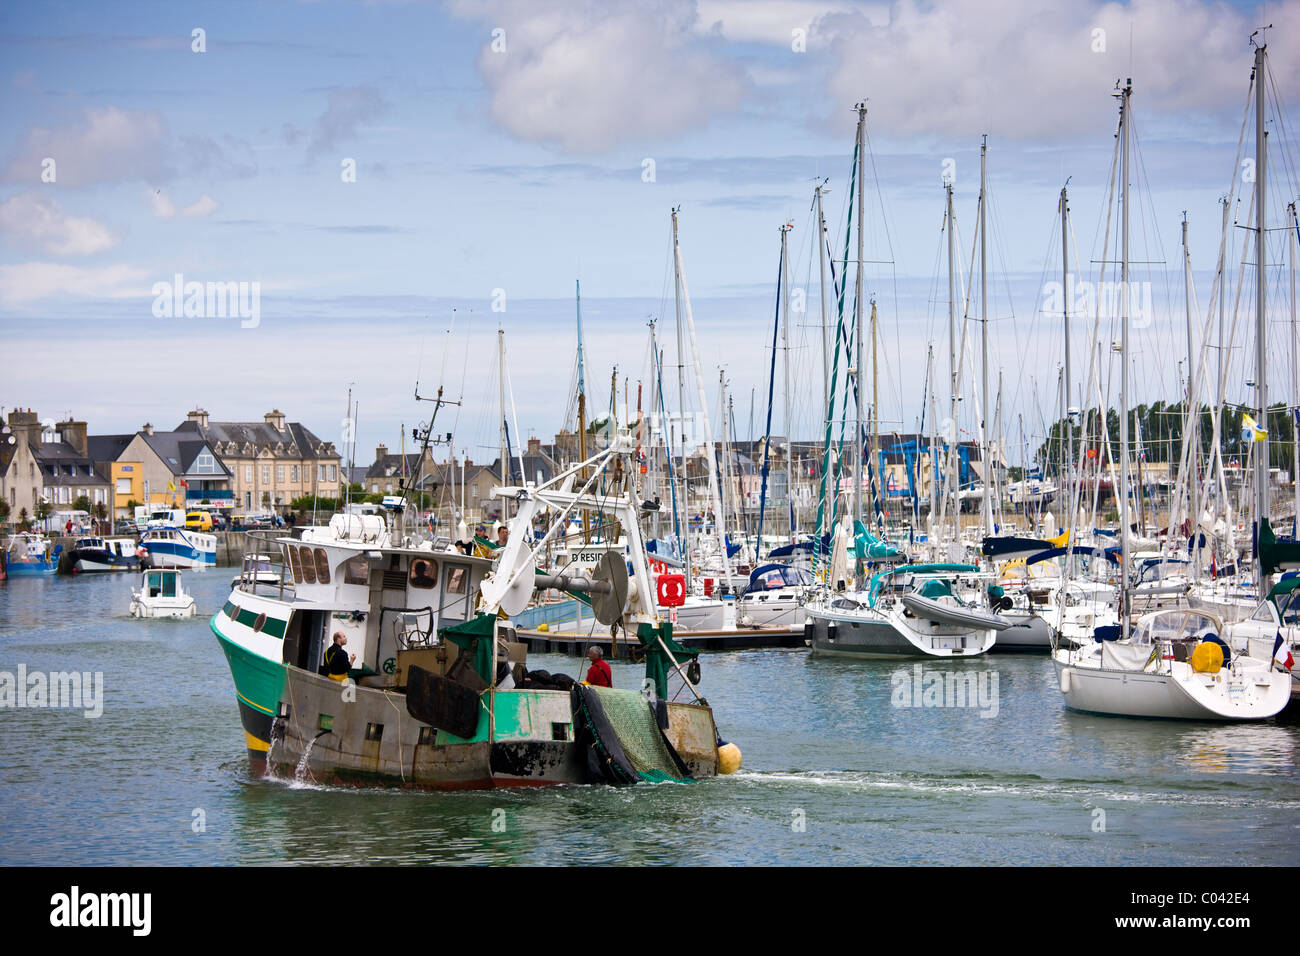 Bateau de pêche chalutier en channel port de St Vaast La Hougue en Normandie, France Banque D'Images